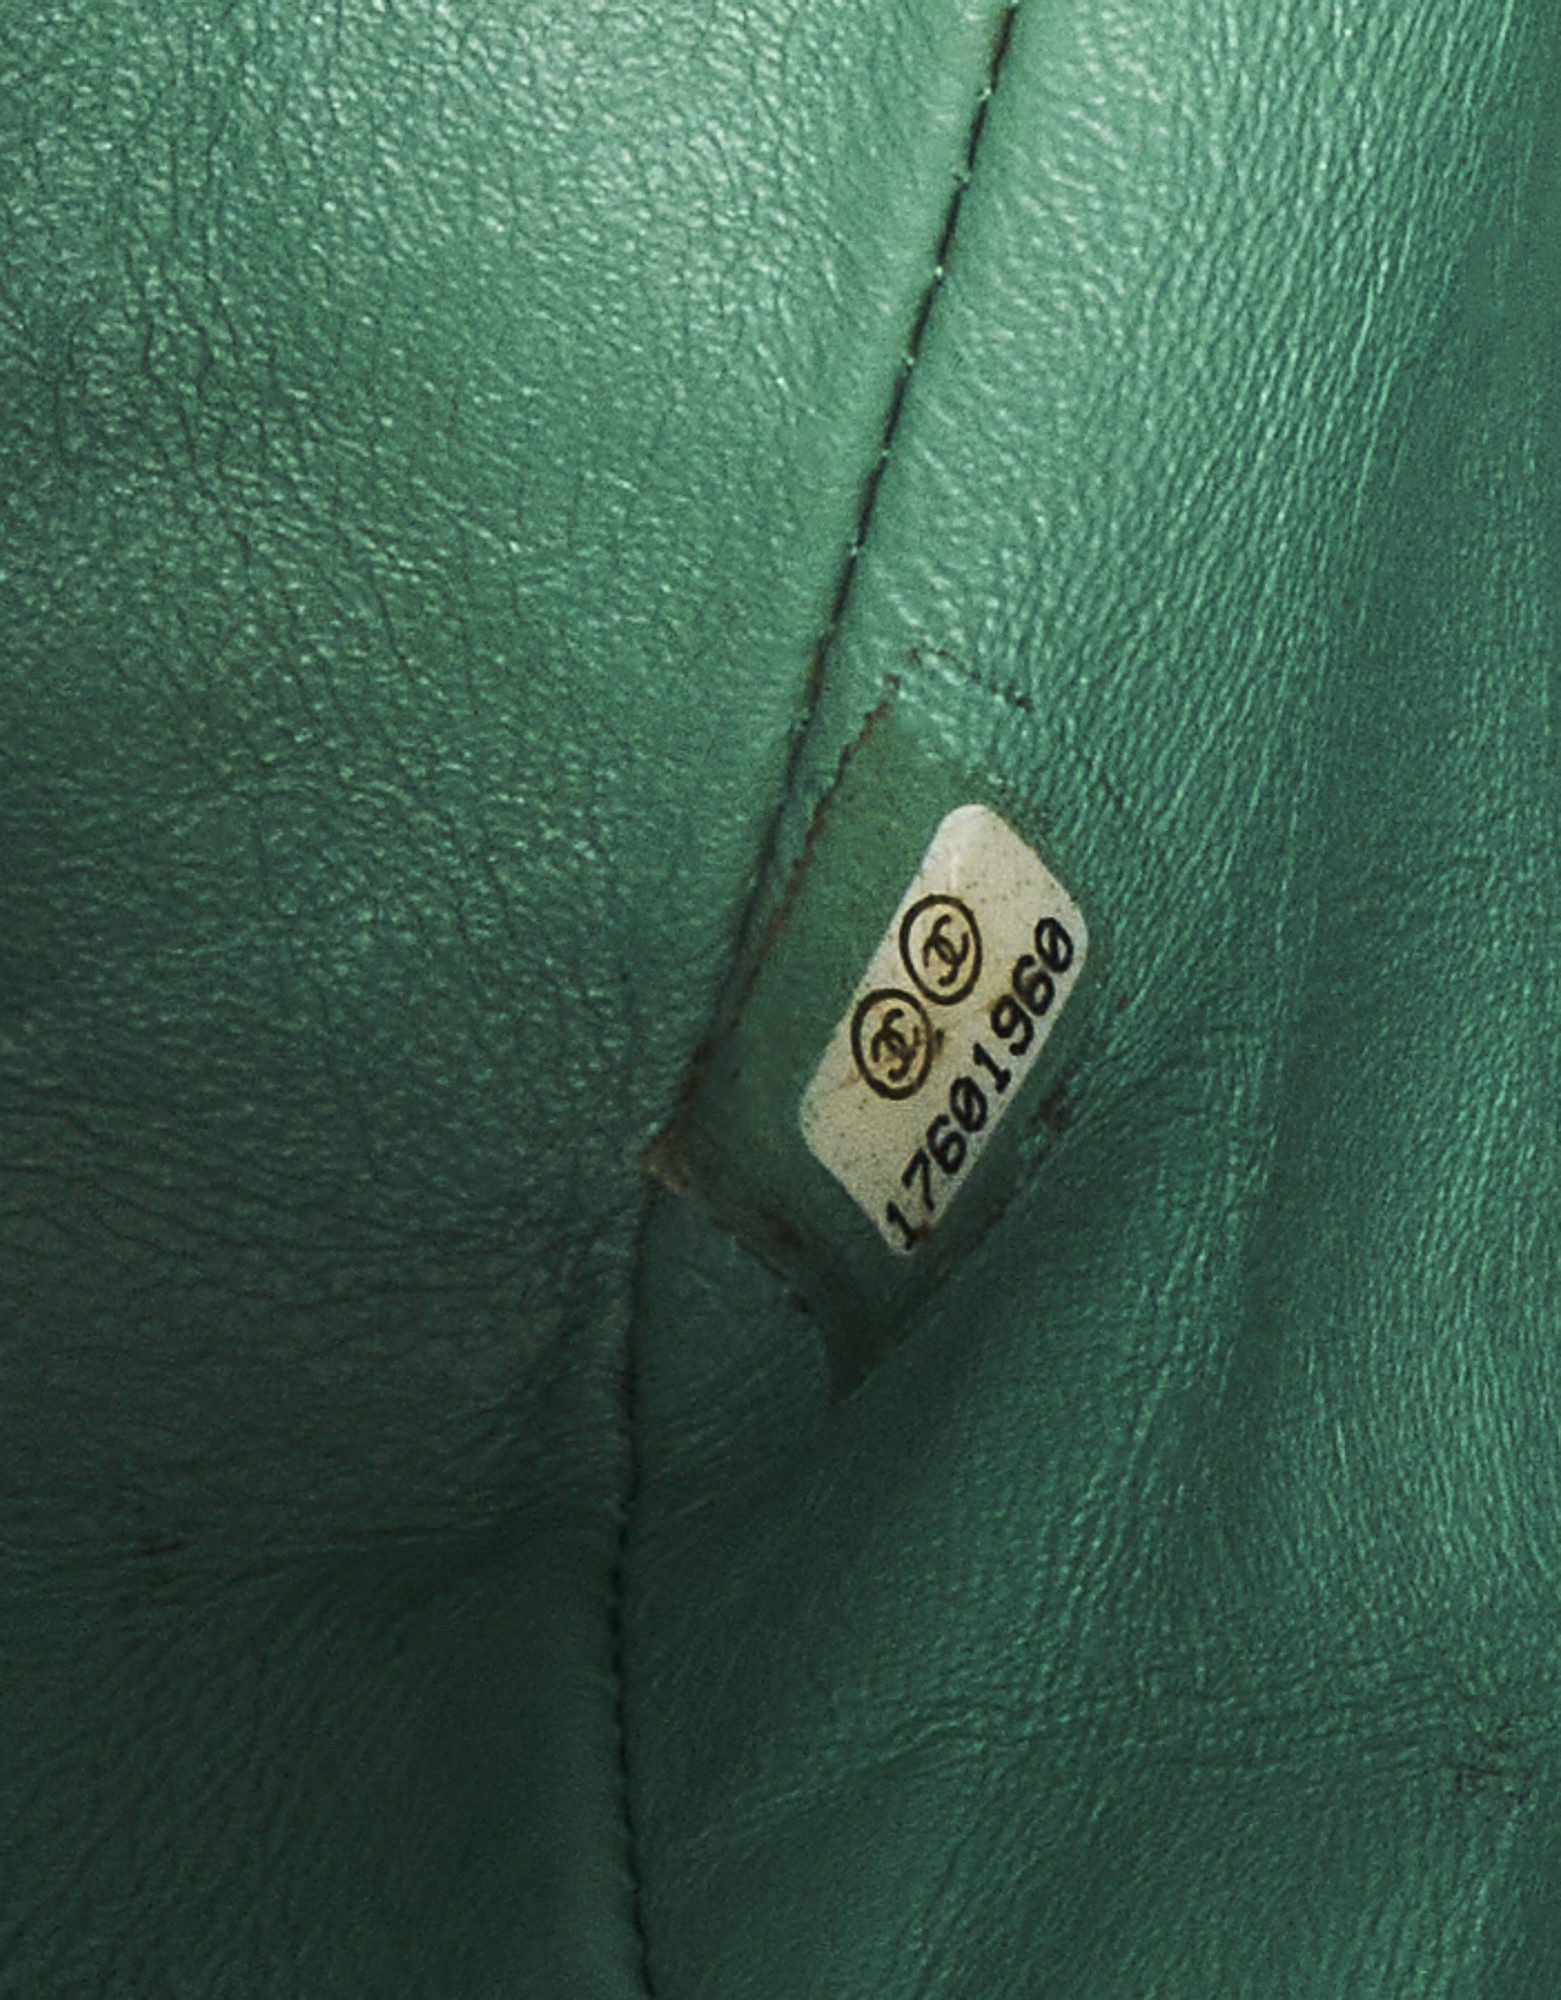 Chanel Timeless Mini sac carré verni vert SACLÀB